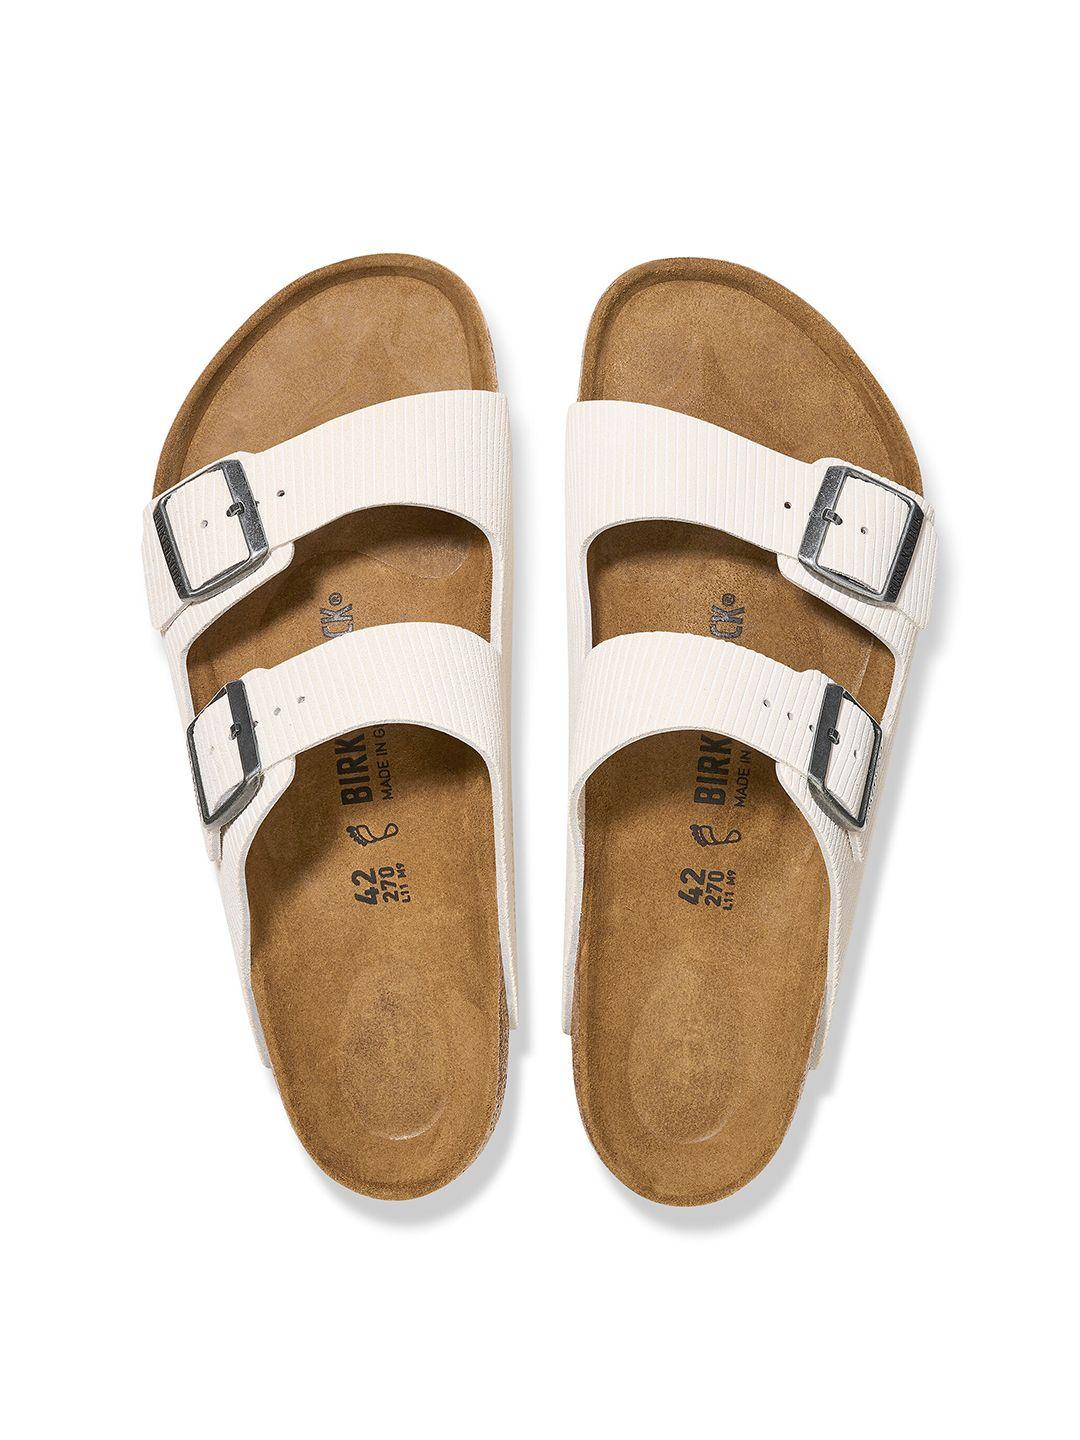 birkenstock unisex arizona suede embossed narrow width two-strap comfort sandals